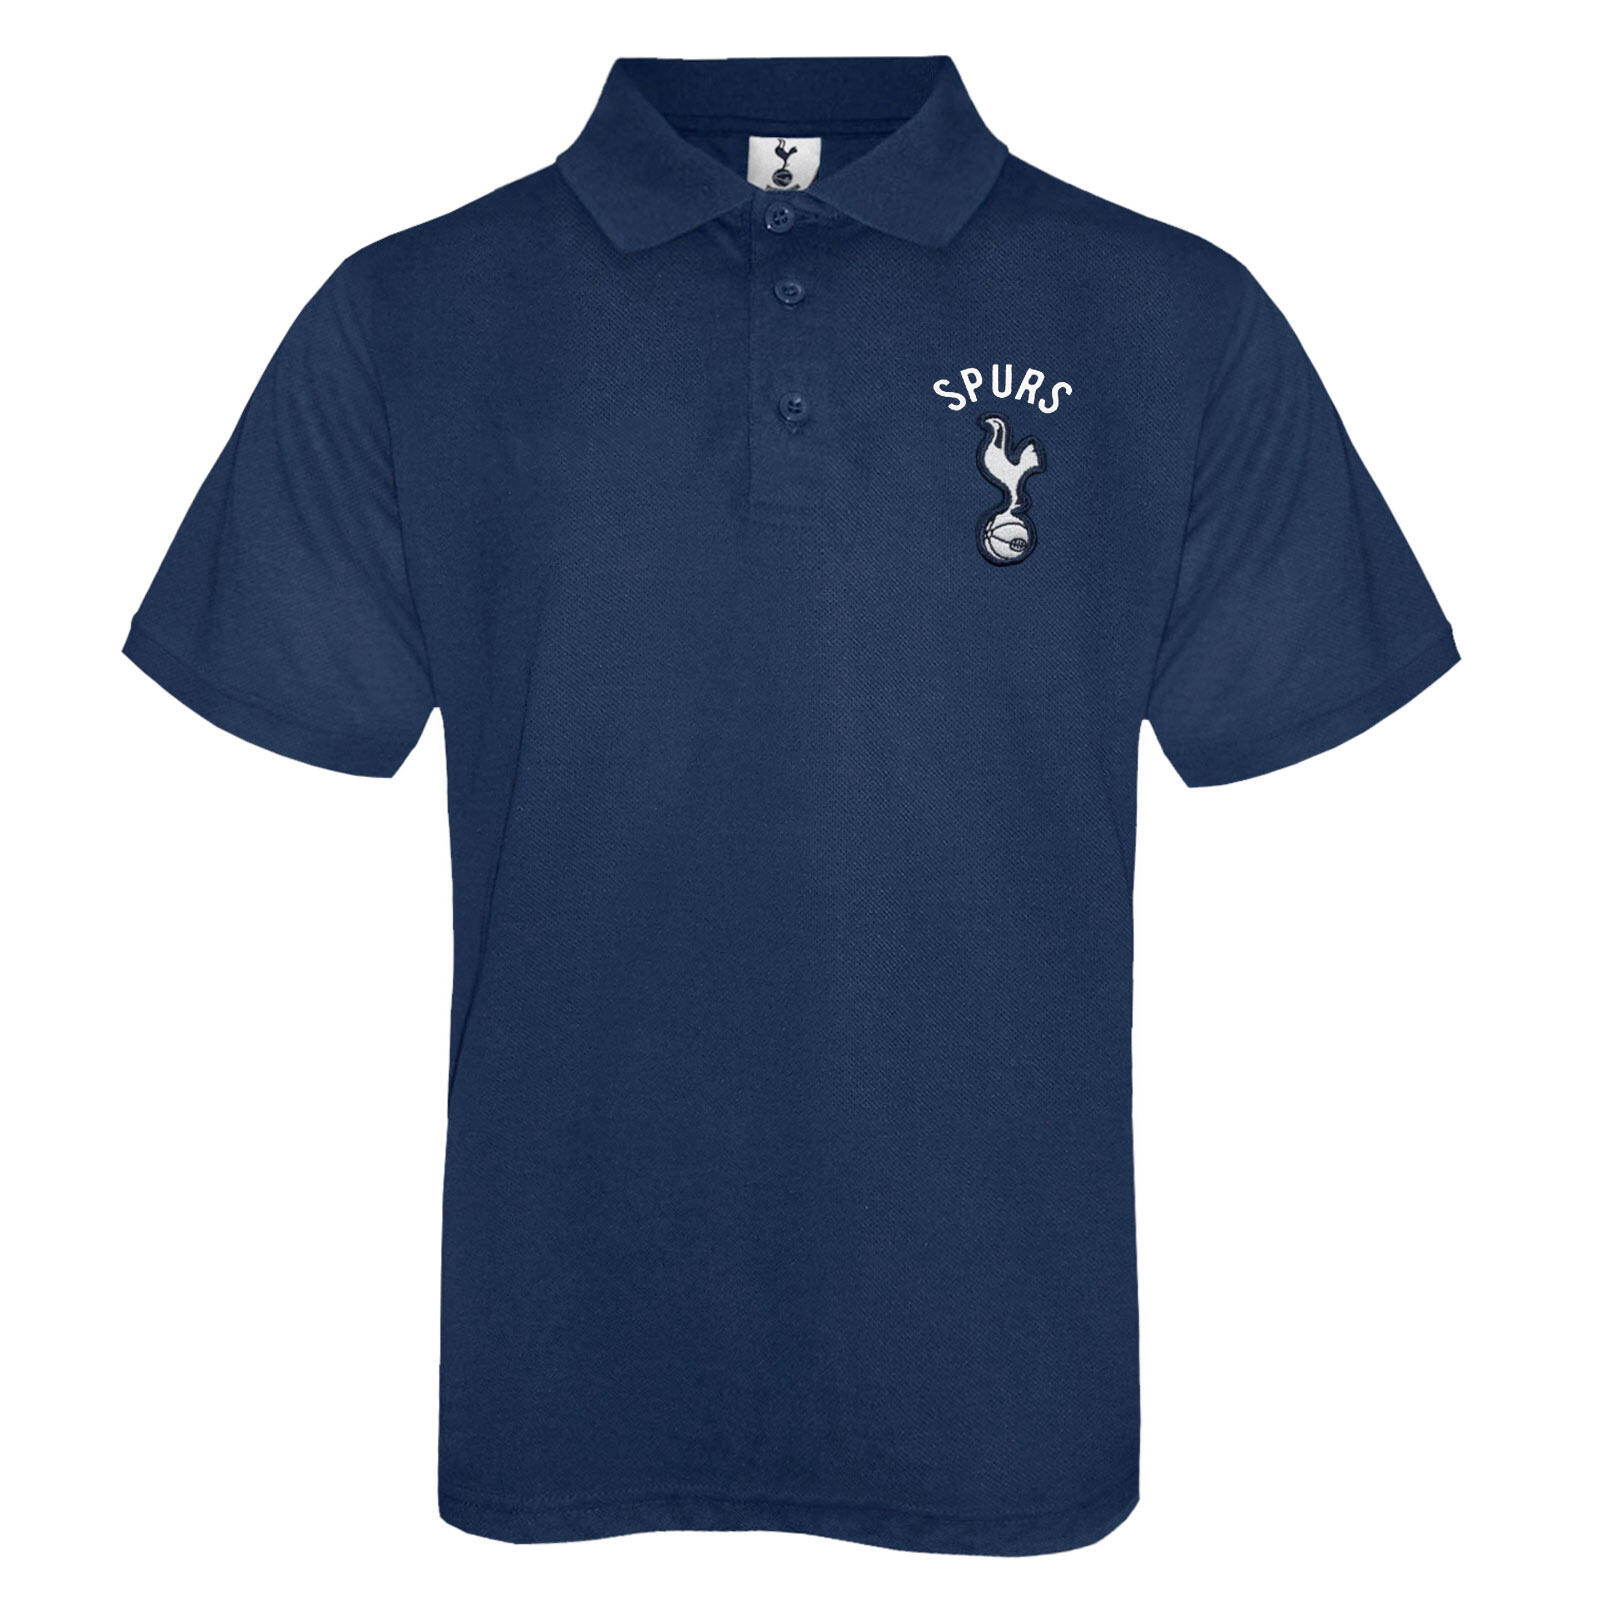 Tottenham Hotspur Boys Polo Shirt Crest Kids OFFICIAL Football Gift 1/1